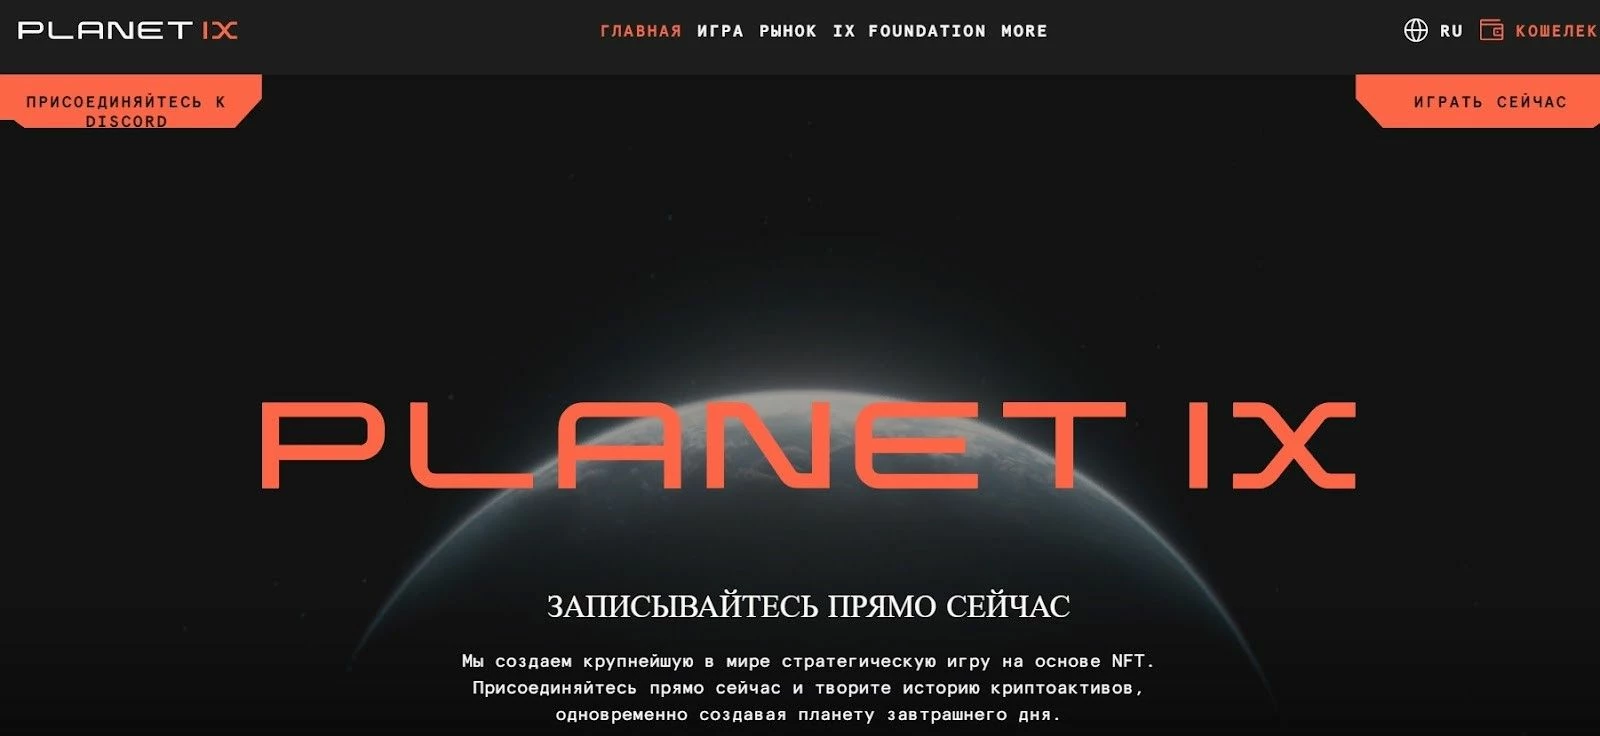 Криптоигра на русскомя языке Planet IX